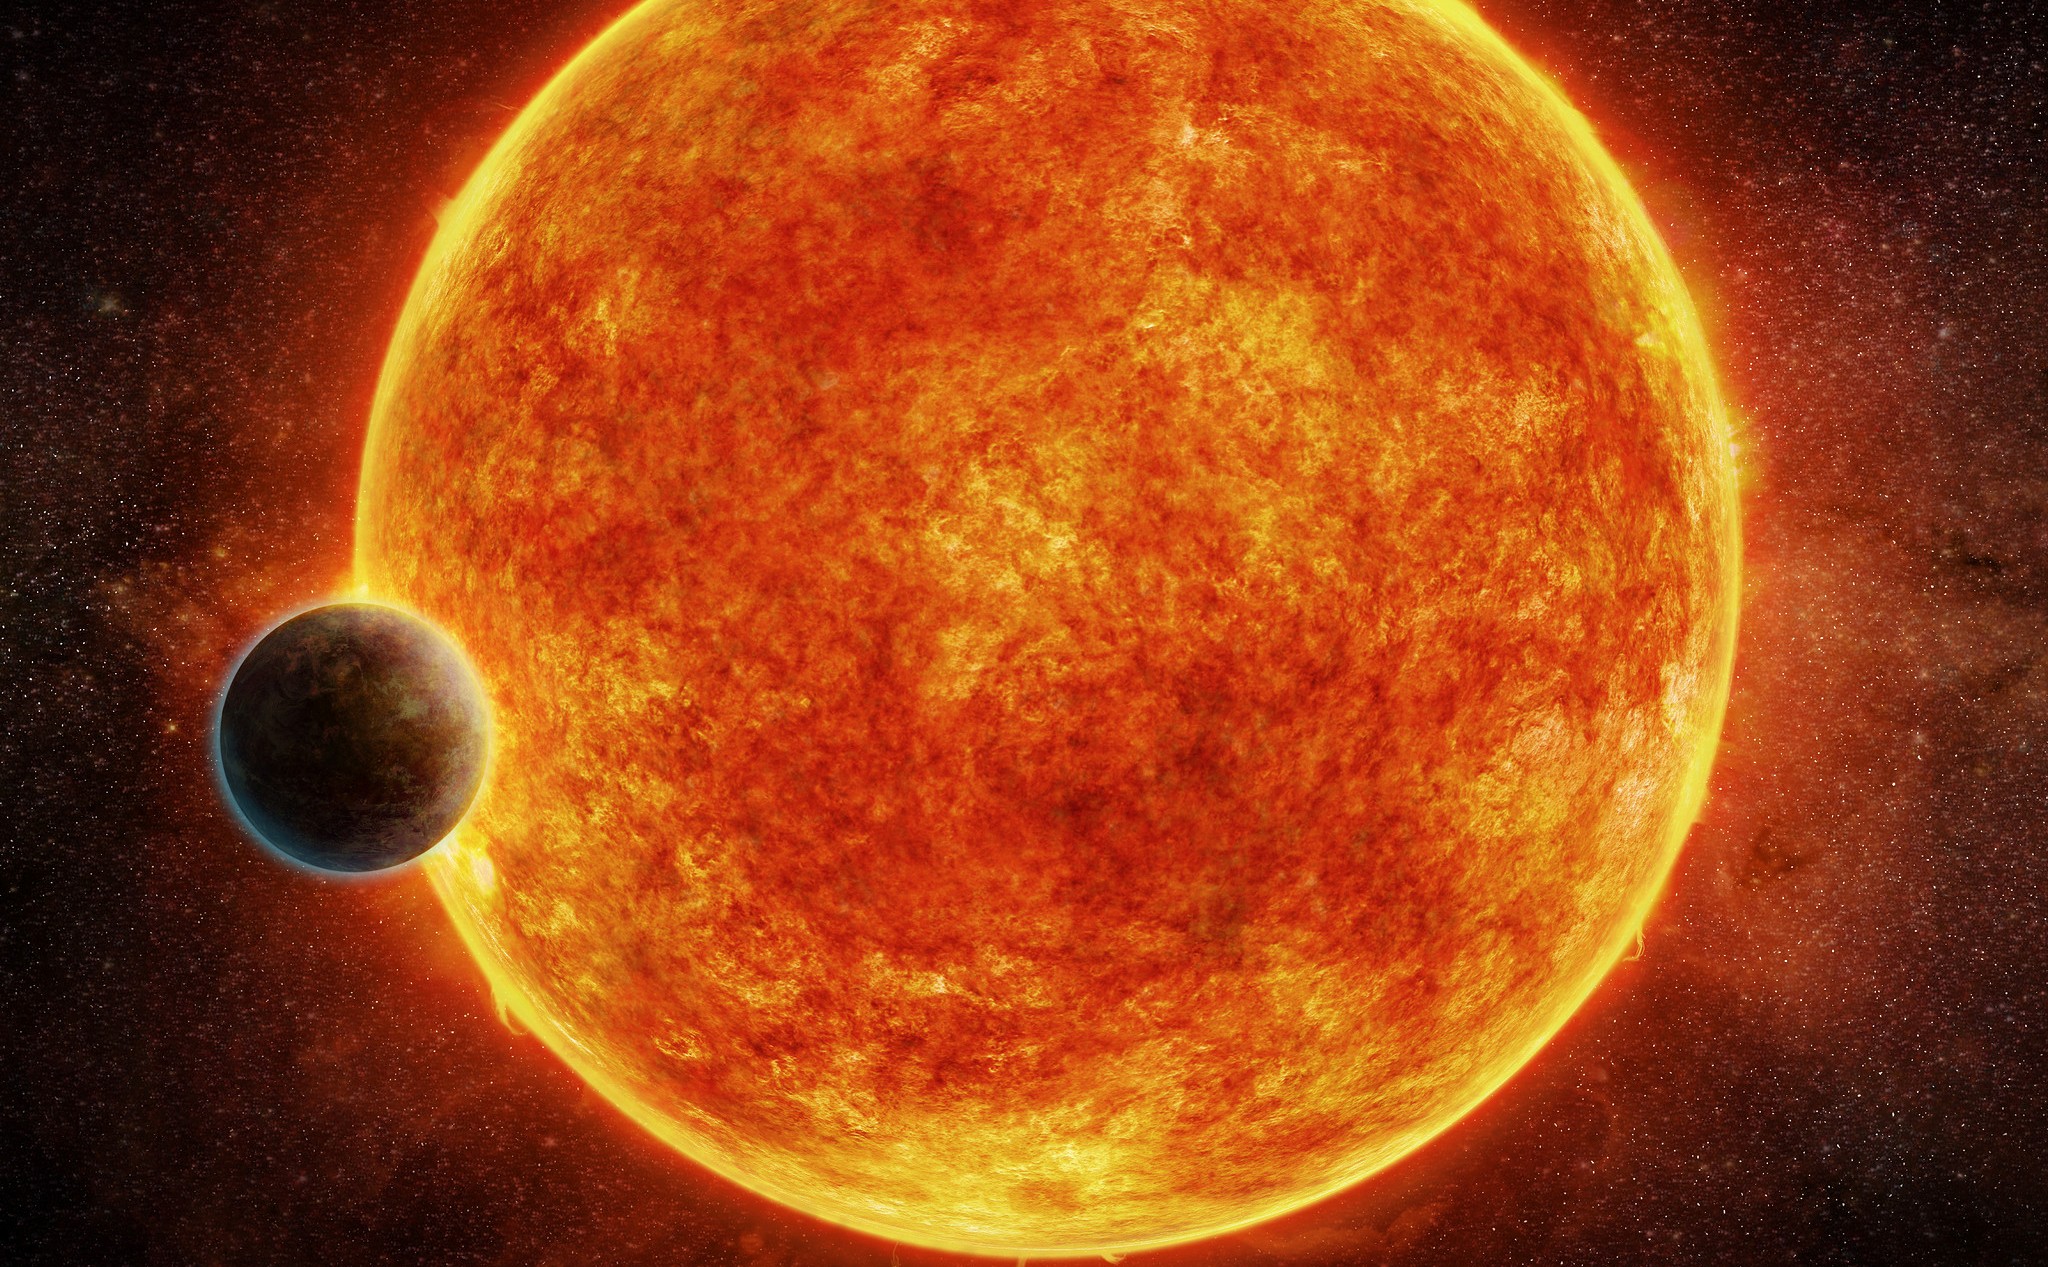 Cette planète se situe au sein de la zone habitable – propice à l’existence d’eau liquide – qui entoure son étoile hôte, une naine rouge de faible luminosité baptisée LHS 1140. La planète avoisine les 6,6 masses terrestres. Elle est ici représentée au moment de son transit devant LHS 1140. En bleu, figure l’atmosphère qui l’entoure probablement. © M. Weiss, CfA